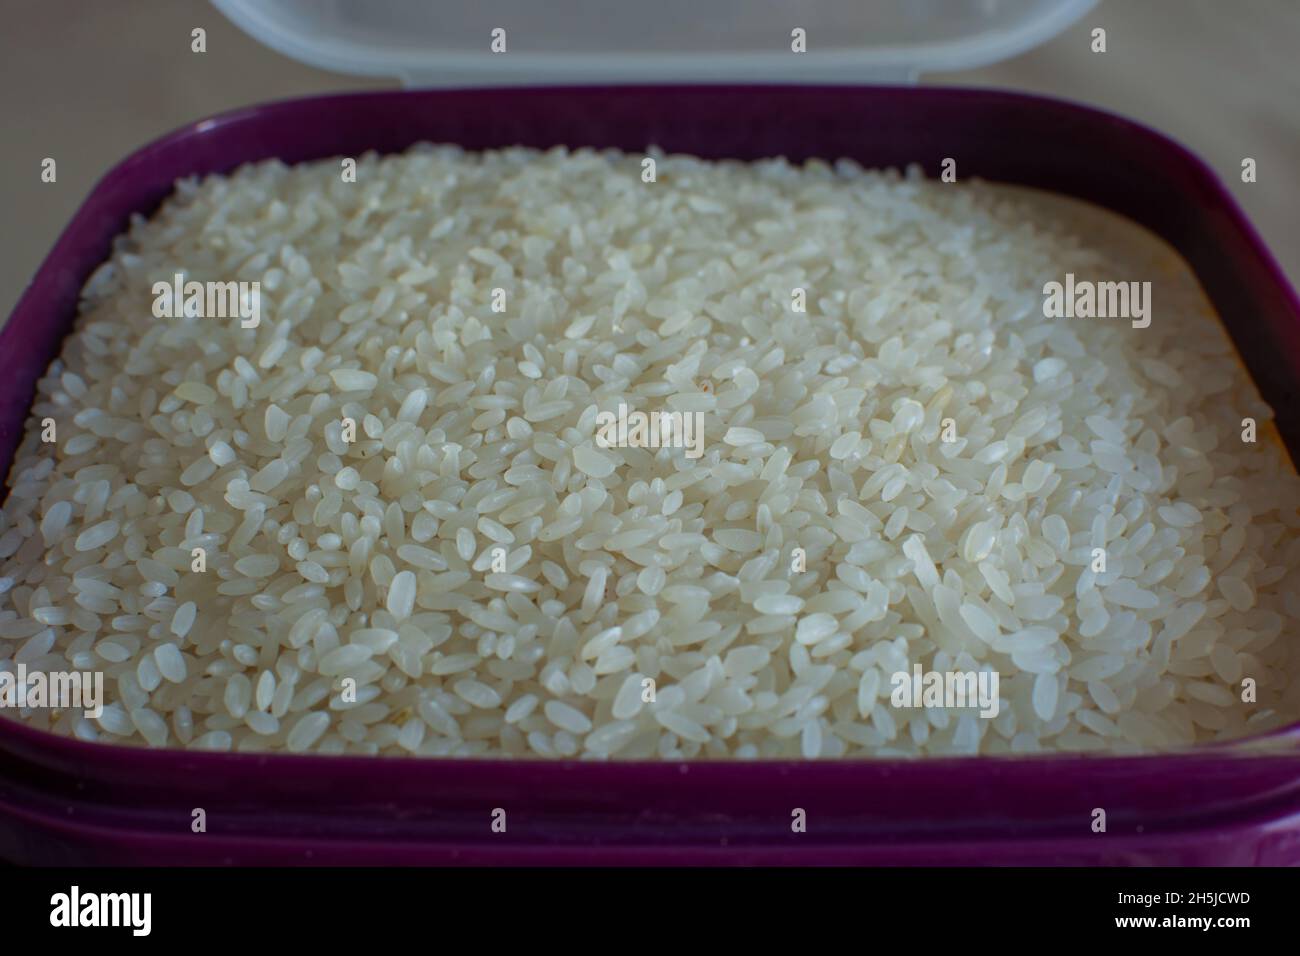 Vista superior de fondo de textura de semilla de arroz blanco. Grano de arroz largo natural, orgánico, alimento para saludable. Agricultura de cultura asiática. Foto de stock